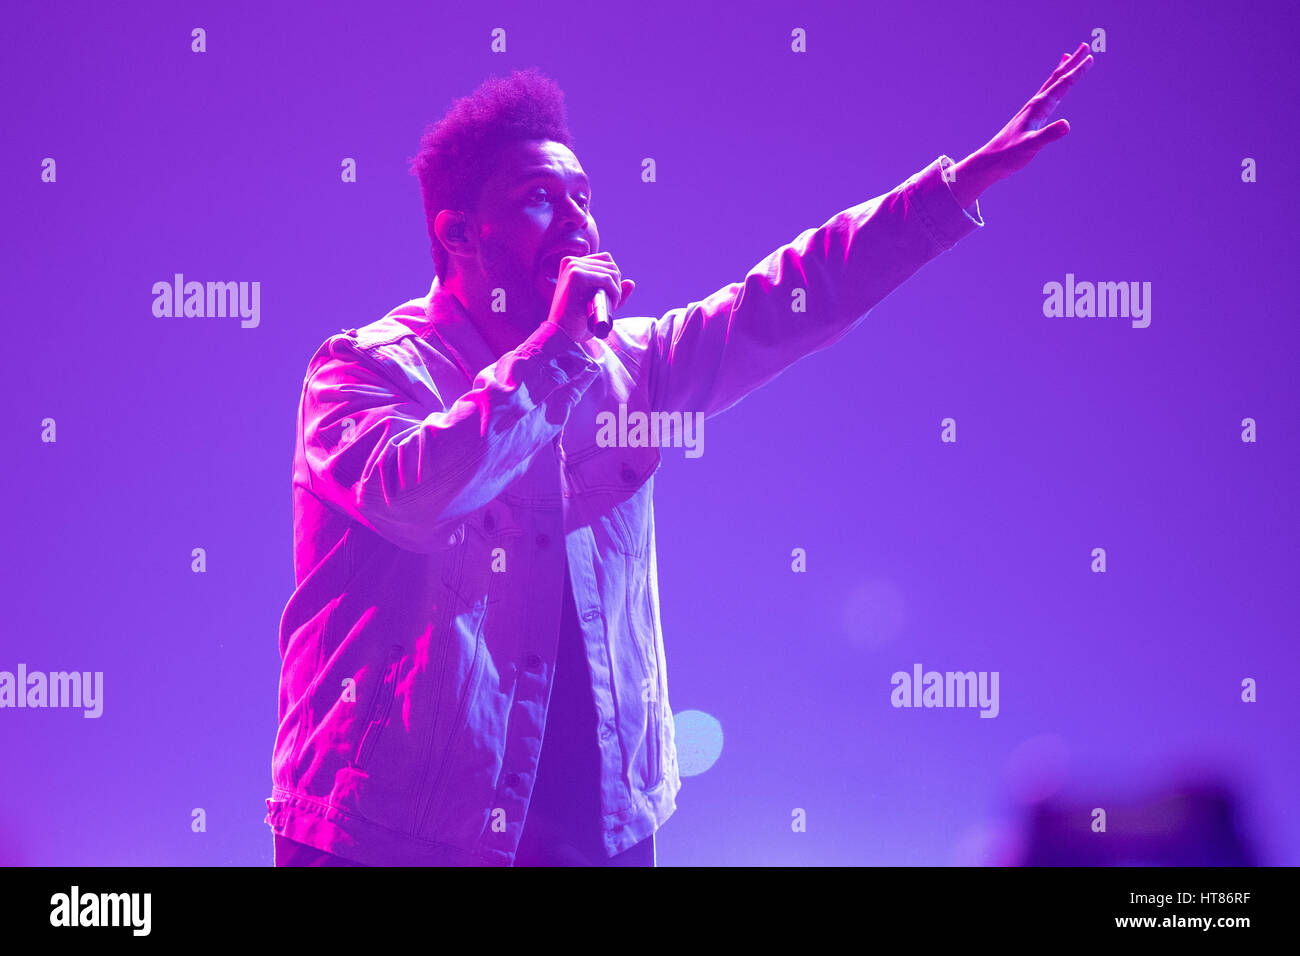 Londra, Regno Unito. Il giorno 08 marzo, 2017. Londra, Inghilterra, Abel Makkonen Tesfaye del Weeknd, esegue la sua seconda notte al London Arena O2.© Jason Richardson / Alamy Live News Foto Stock